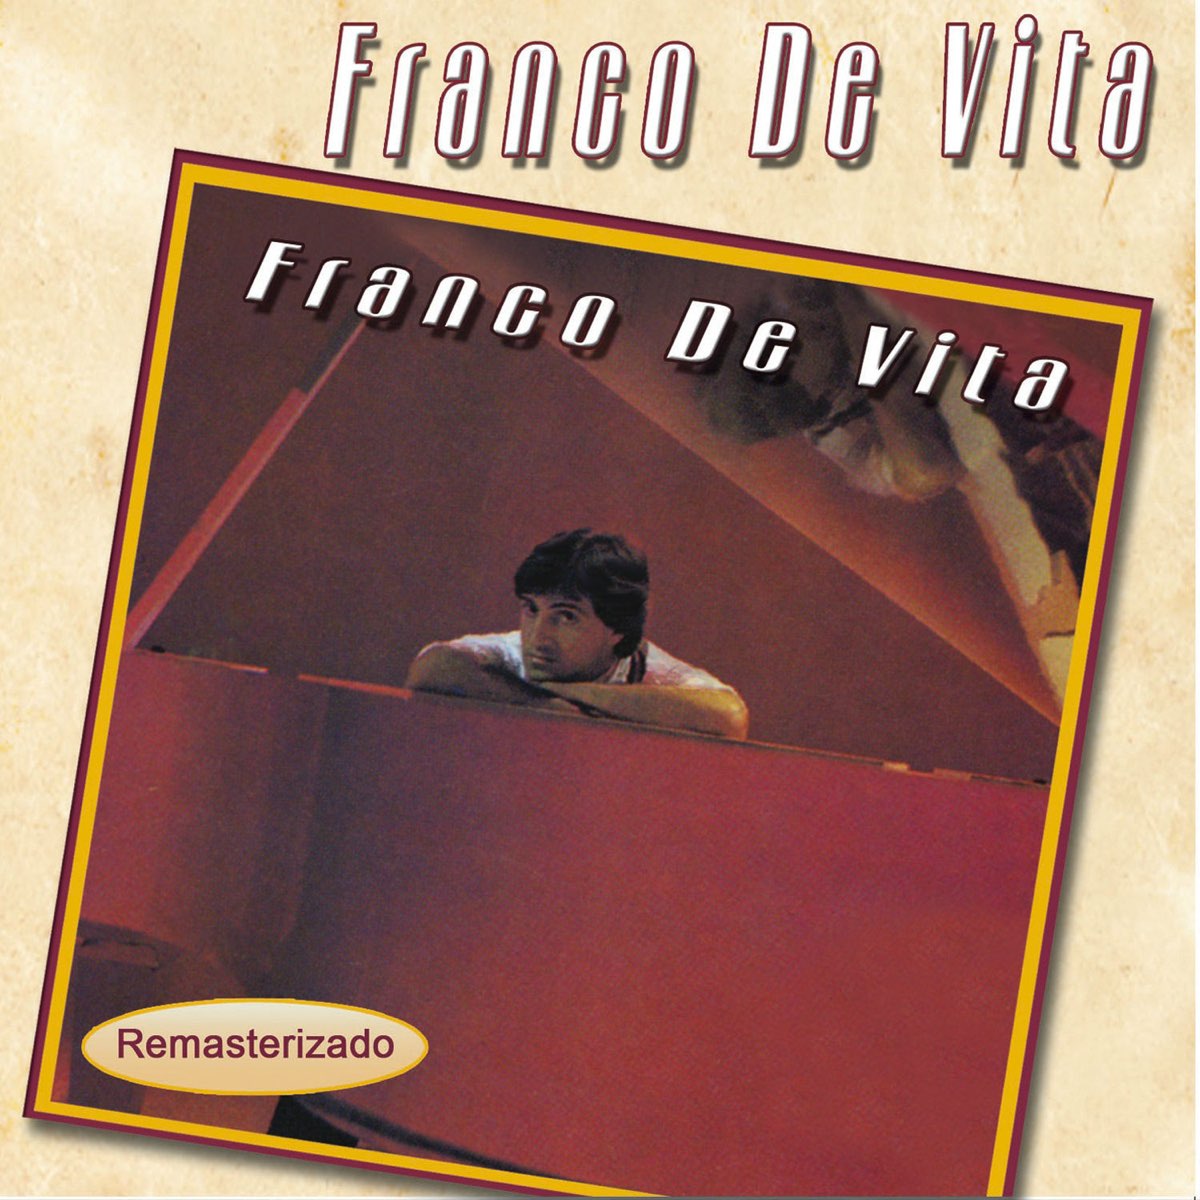 Franco de Vita by Franco de Vita on Apple Music